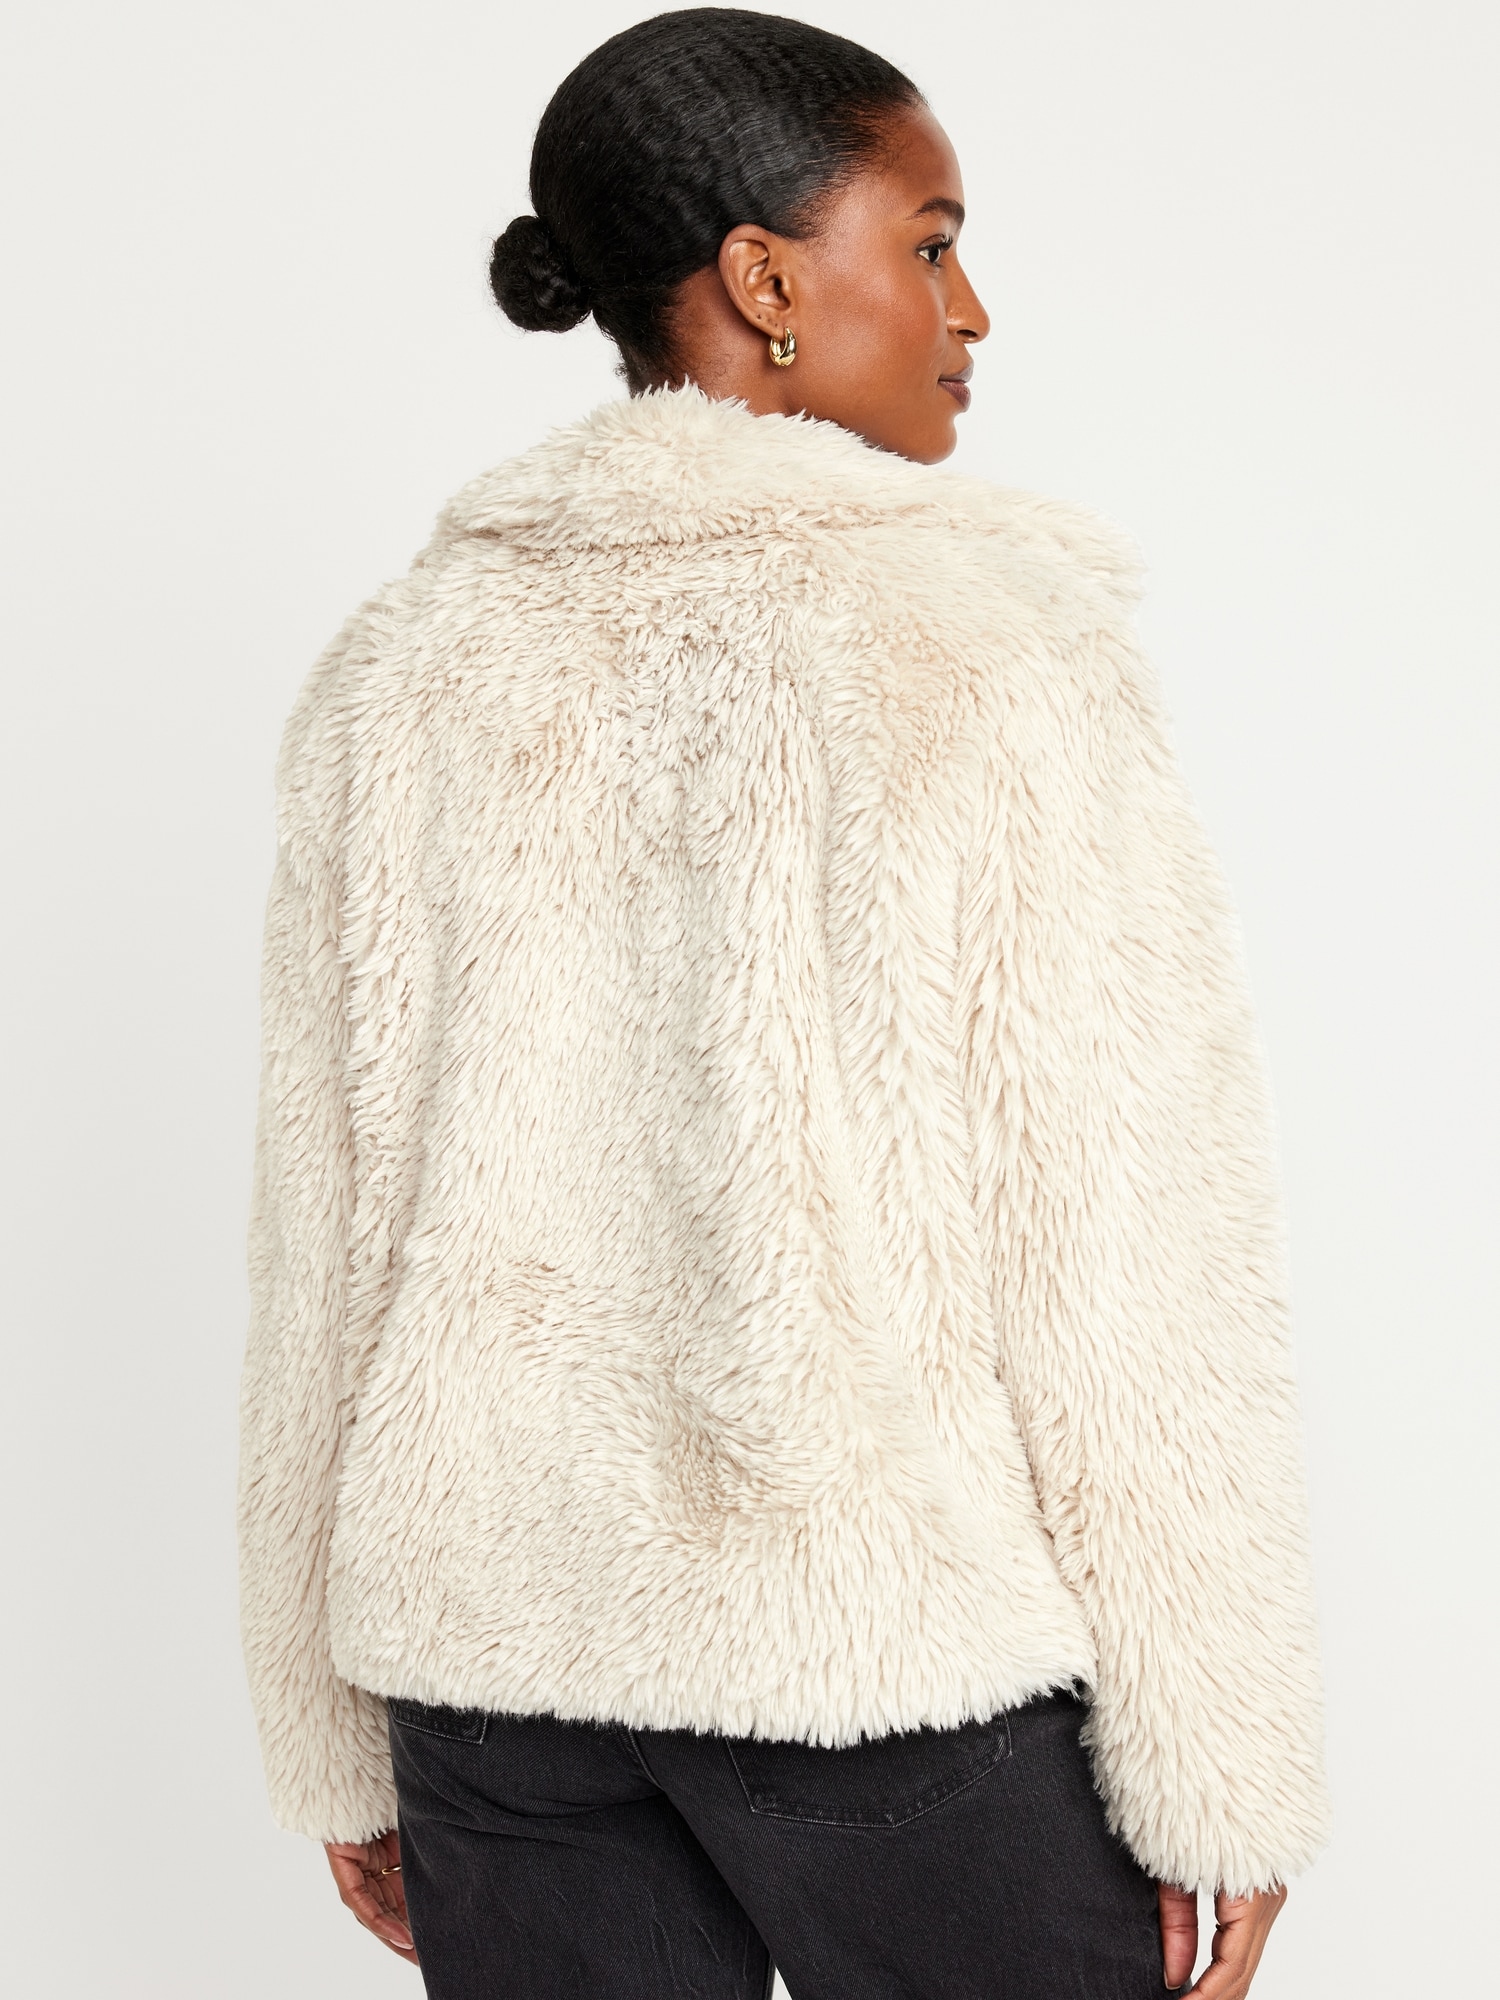 Fur  Fur coat fashion, Long fur coat, Fur coats women